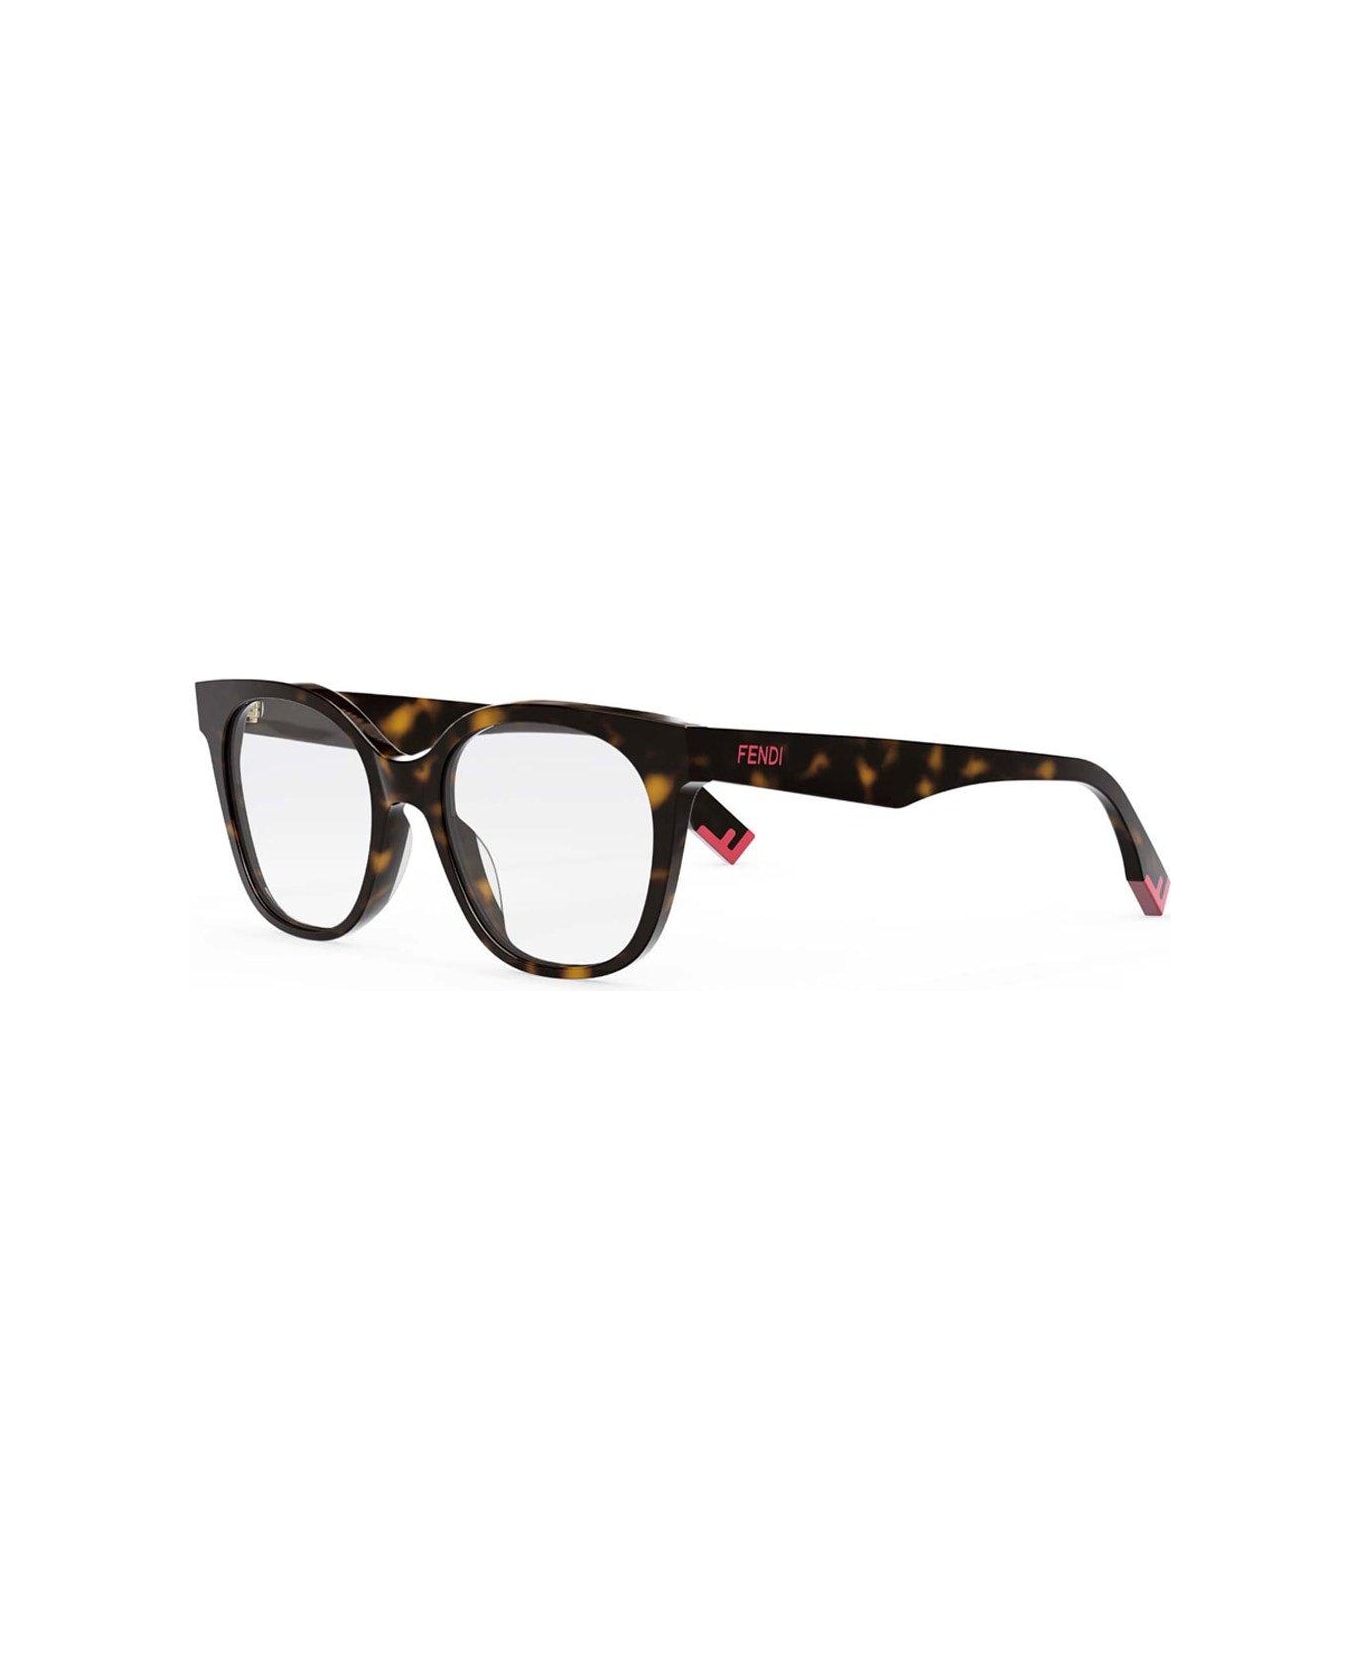 Fendi Eyewear Square-frame Glasses - 052 アイウェア